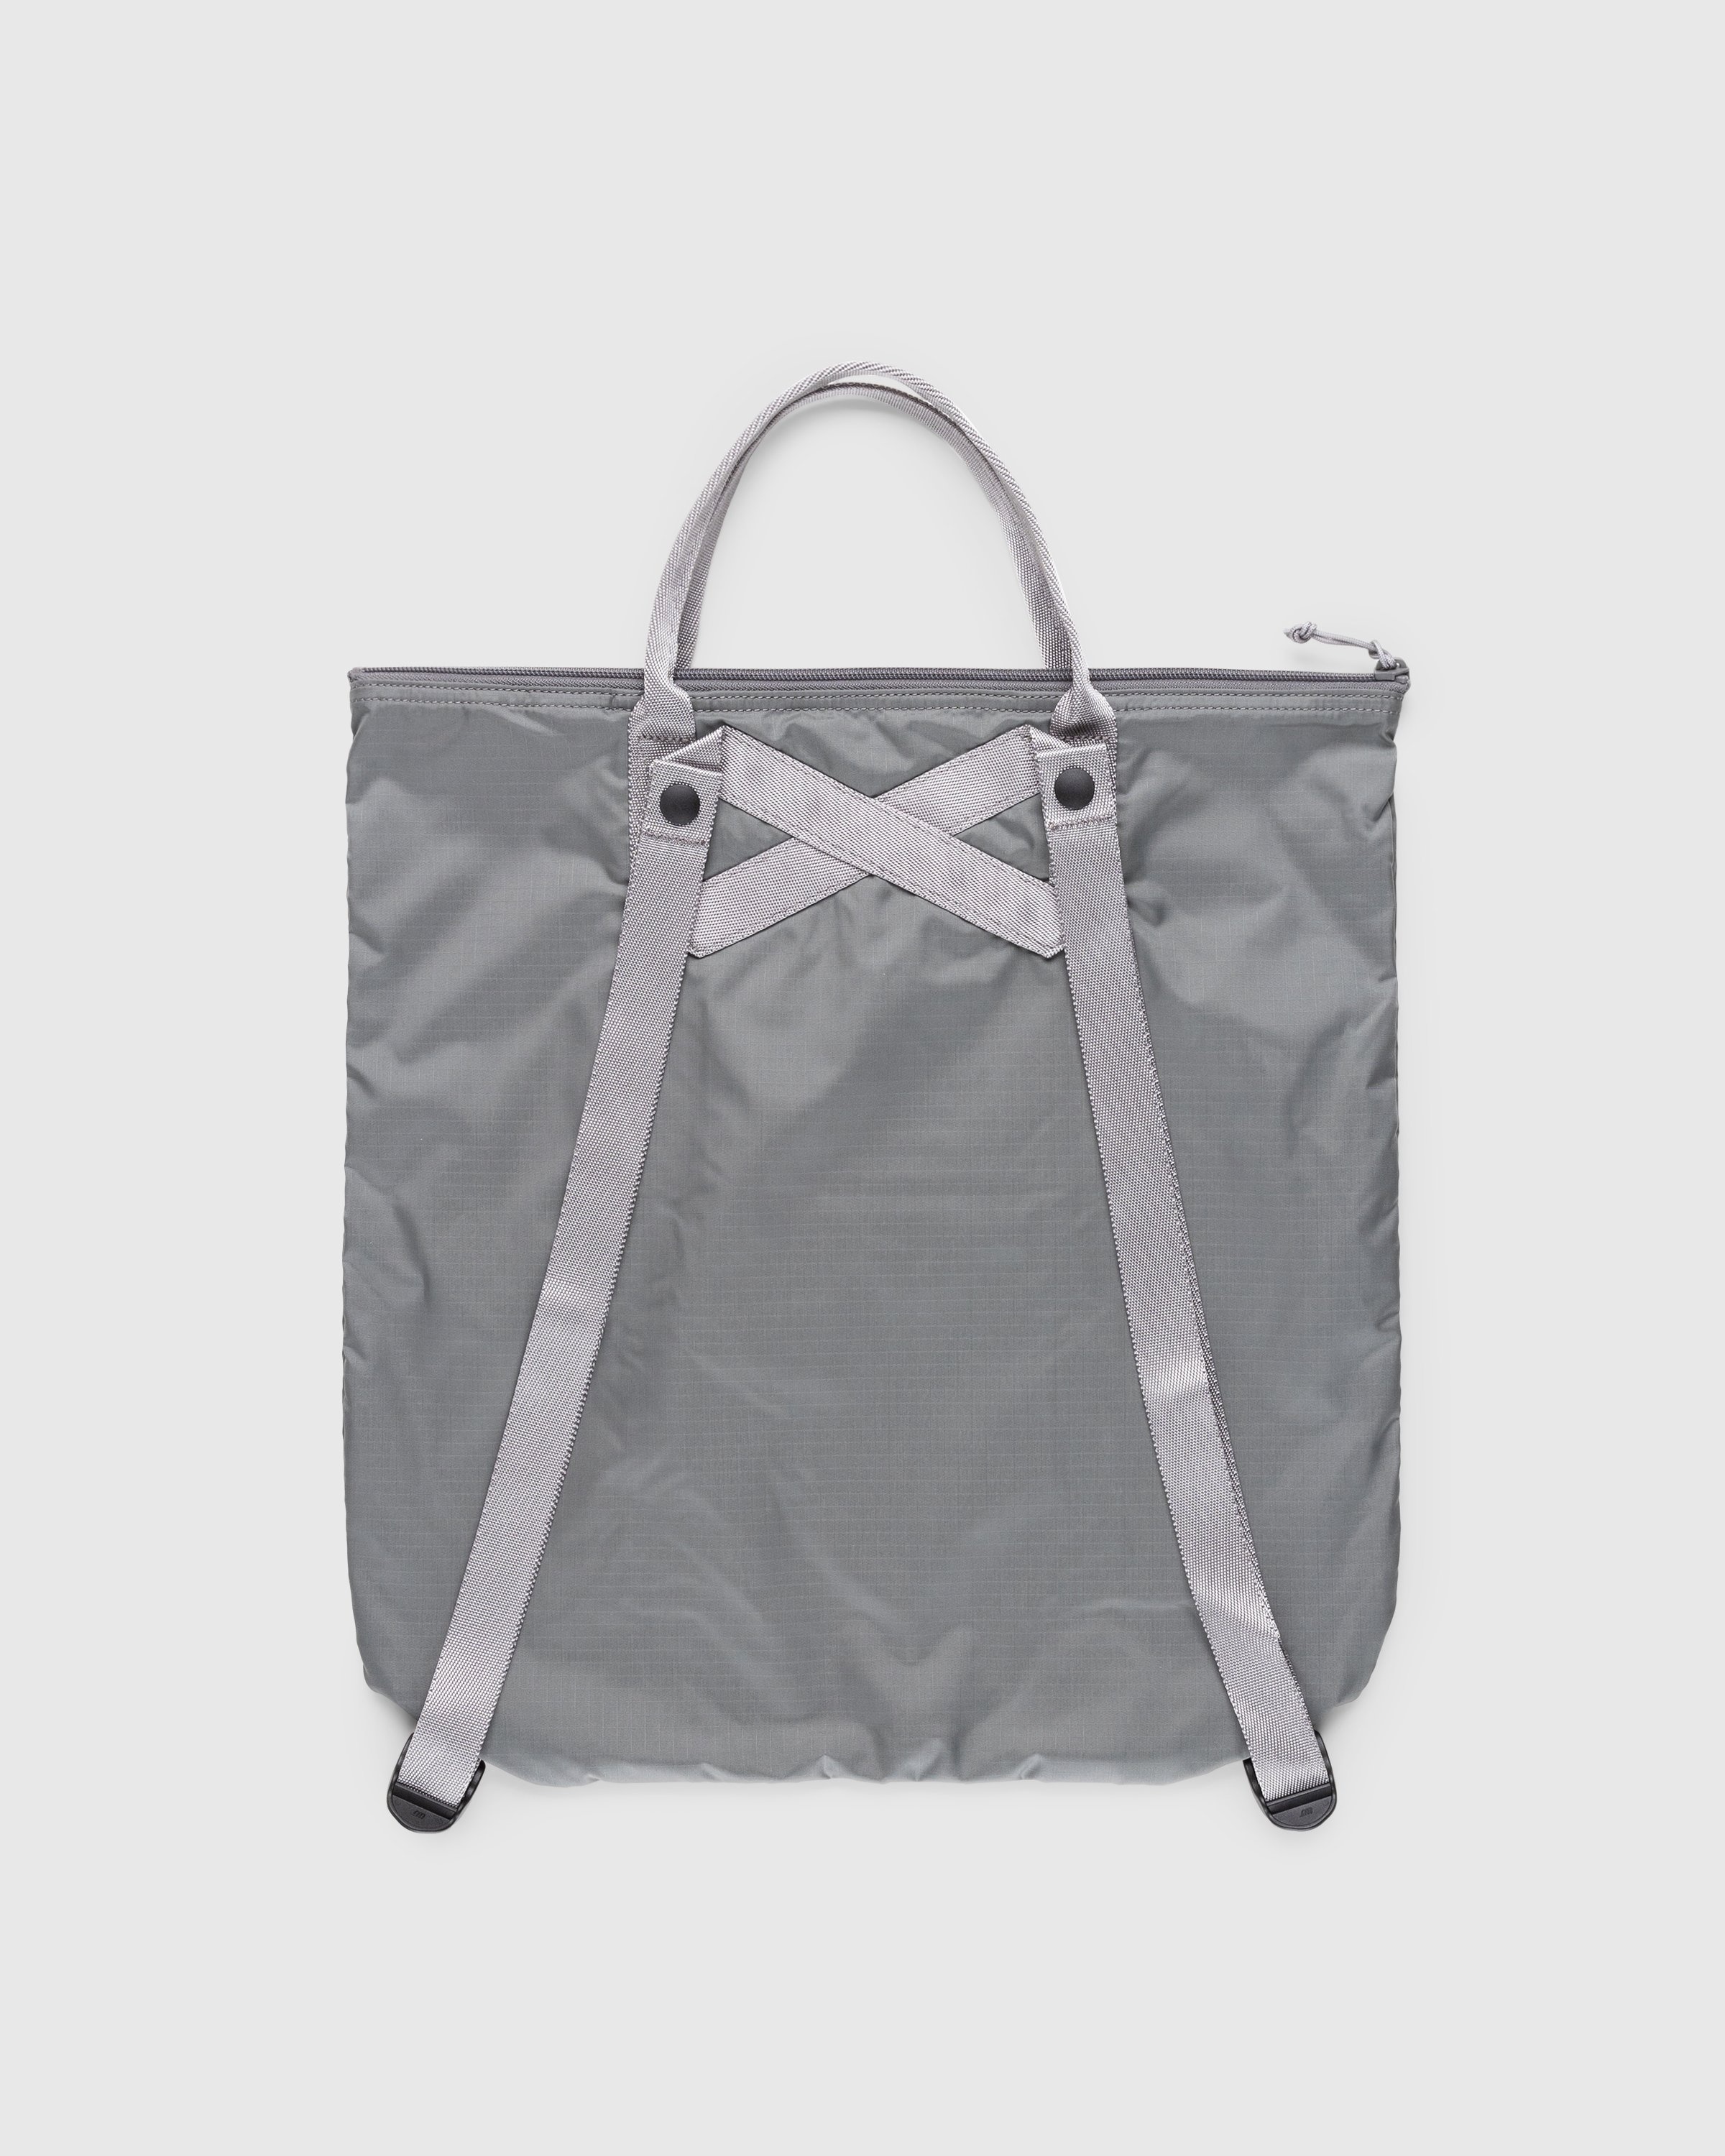 Porter-Yoshida & Co. – Flex 2-Way Tote Bag Grey - Bags - Grey - Image 2